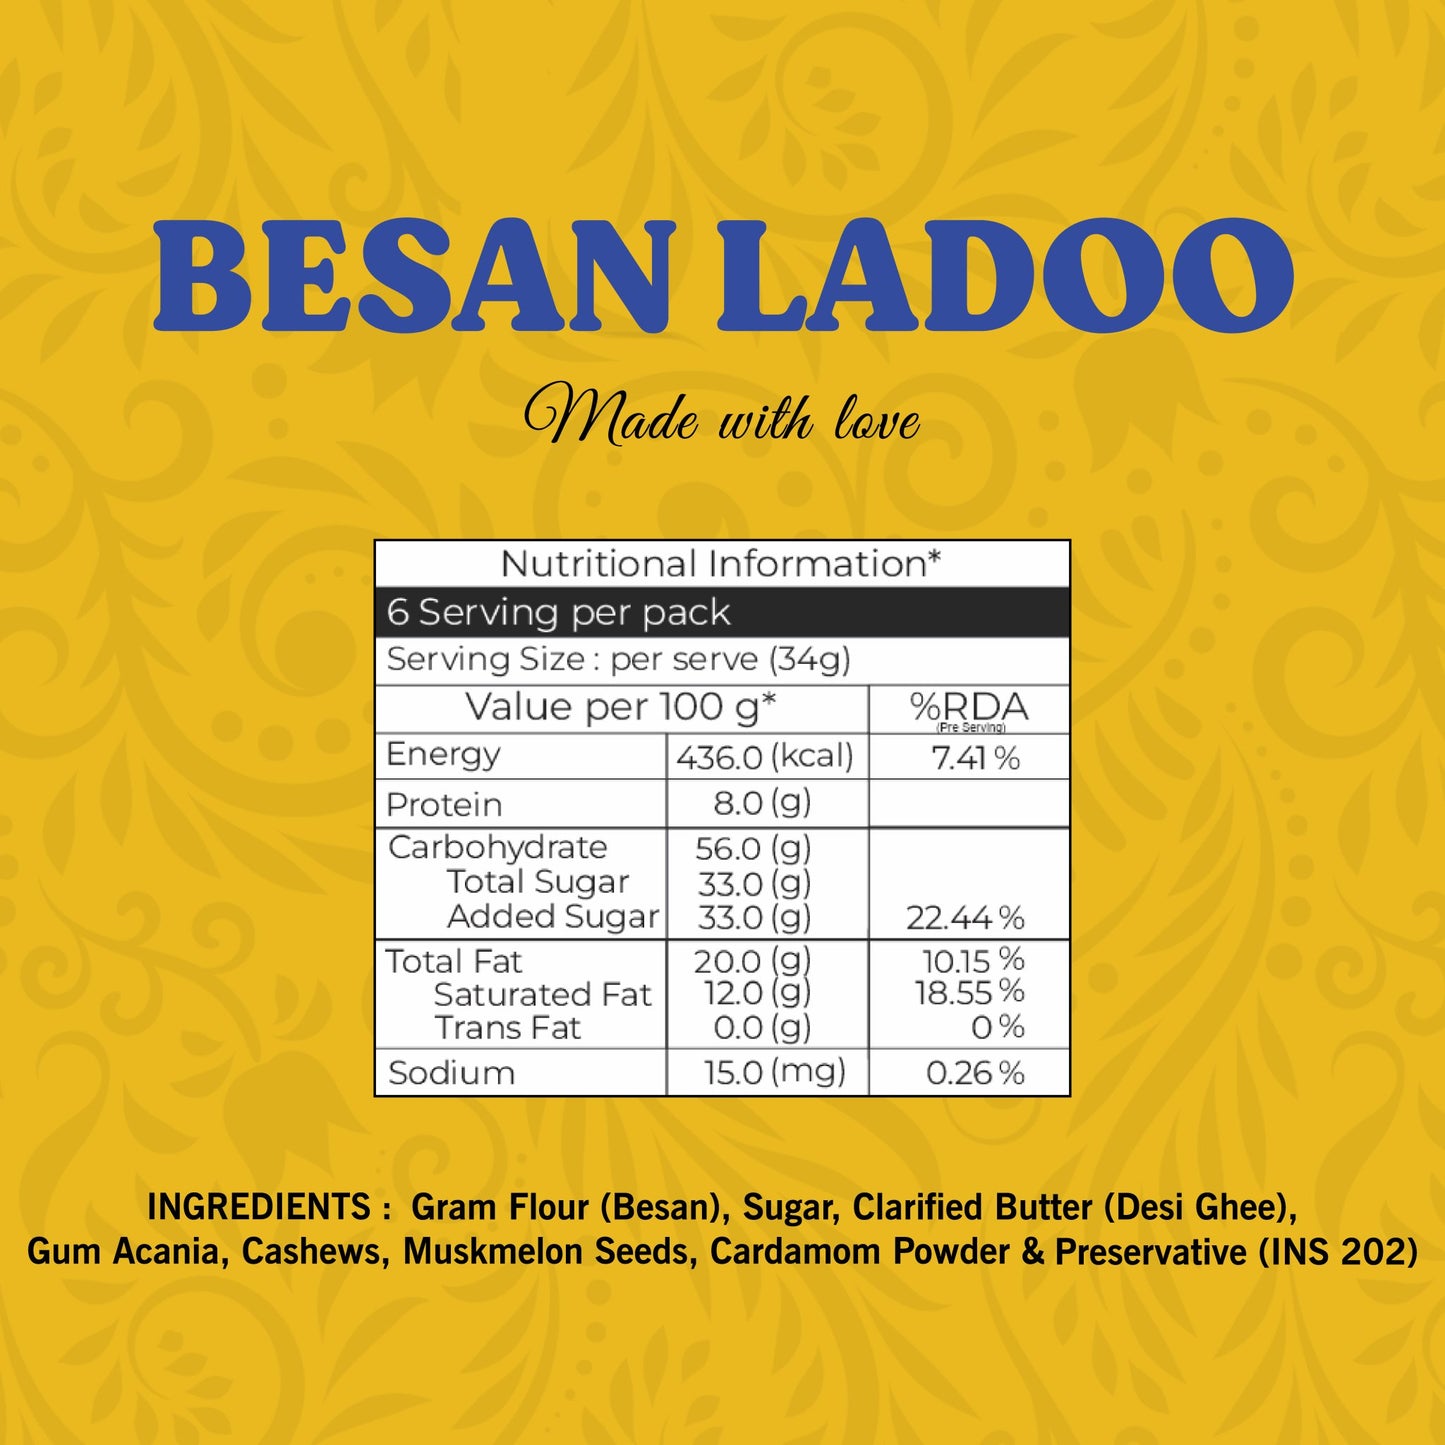 Besan Ladoo - Lynk Foods